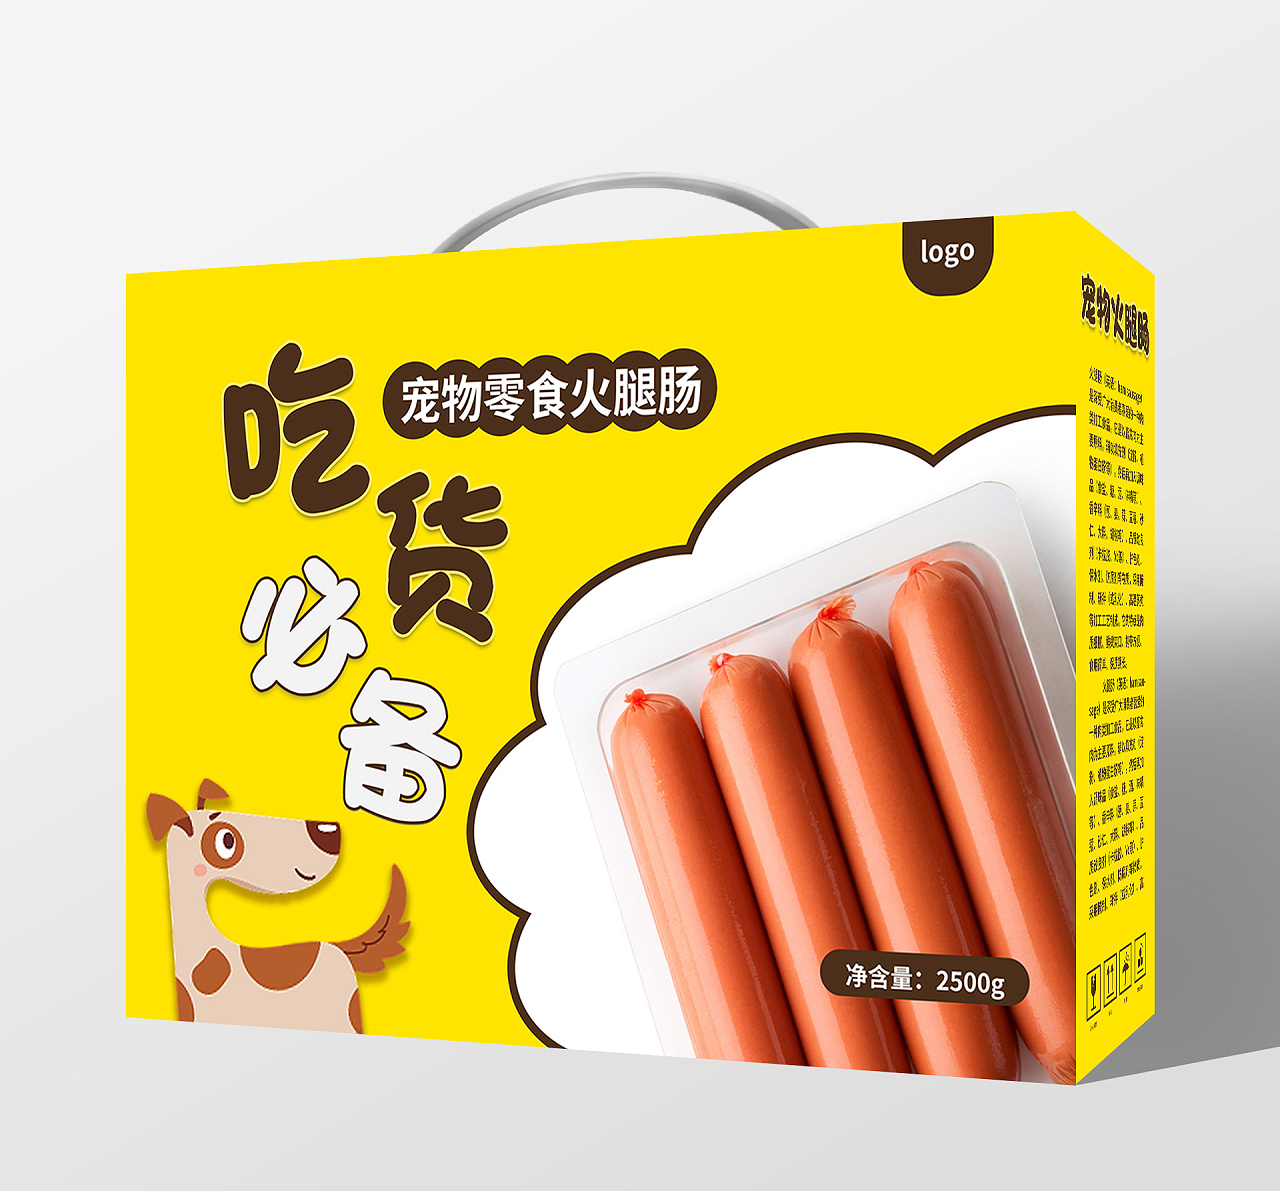 黄颜色背景卡通风格吃货必备宠物火腿肠包装手提盒设计